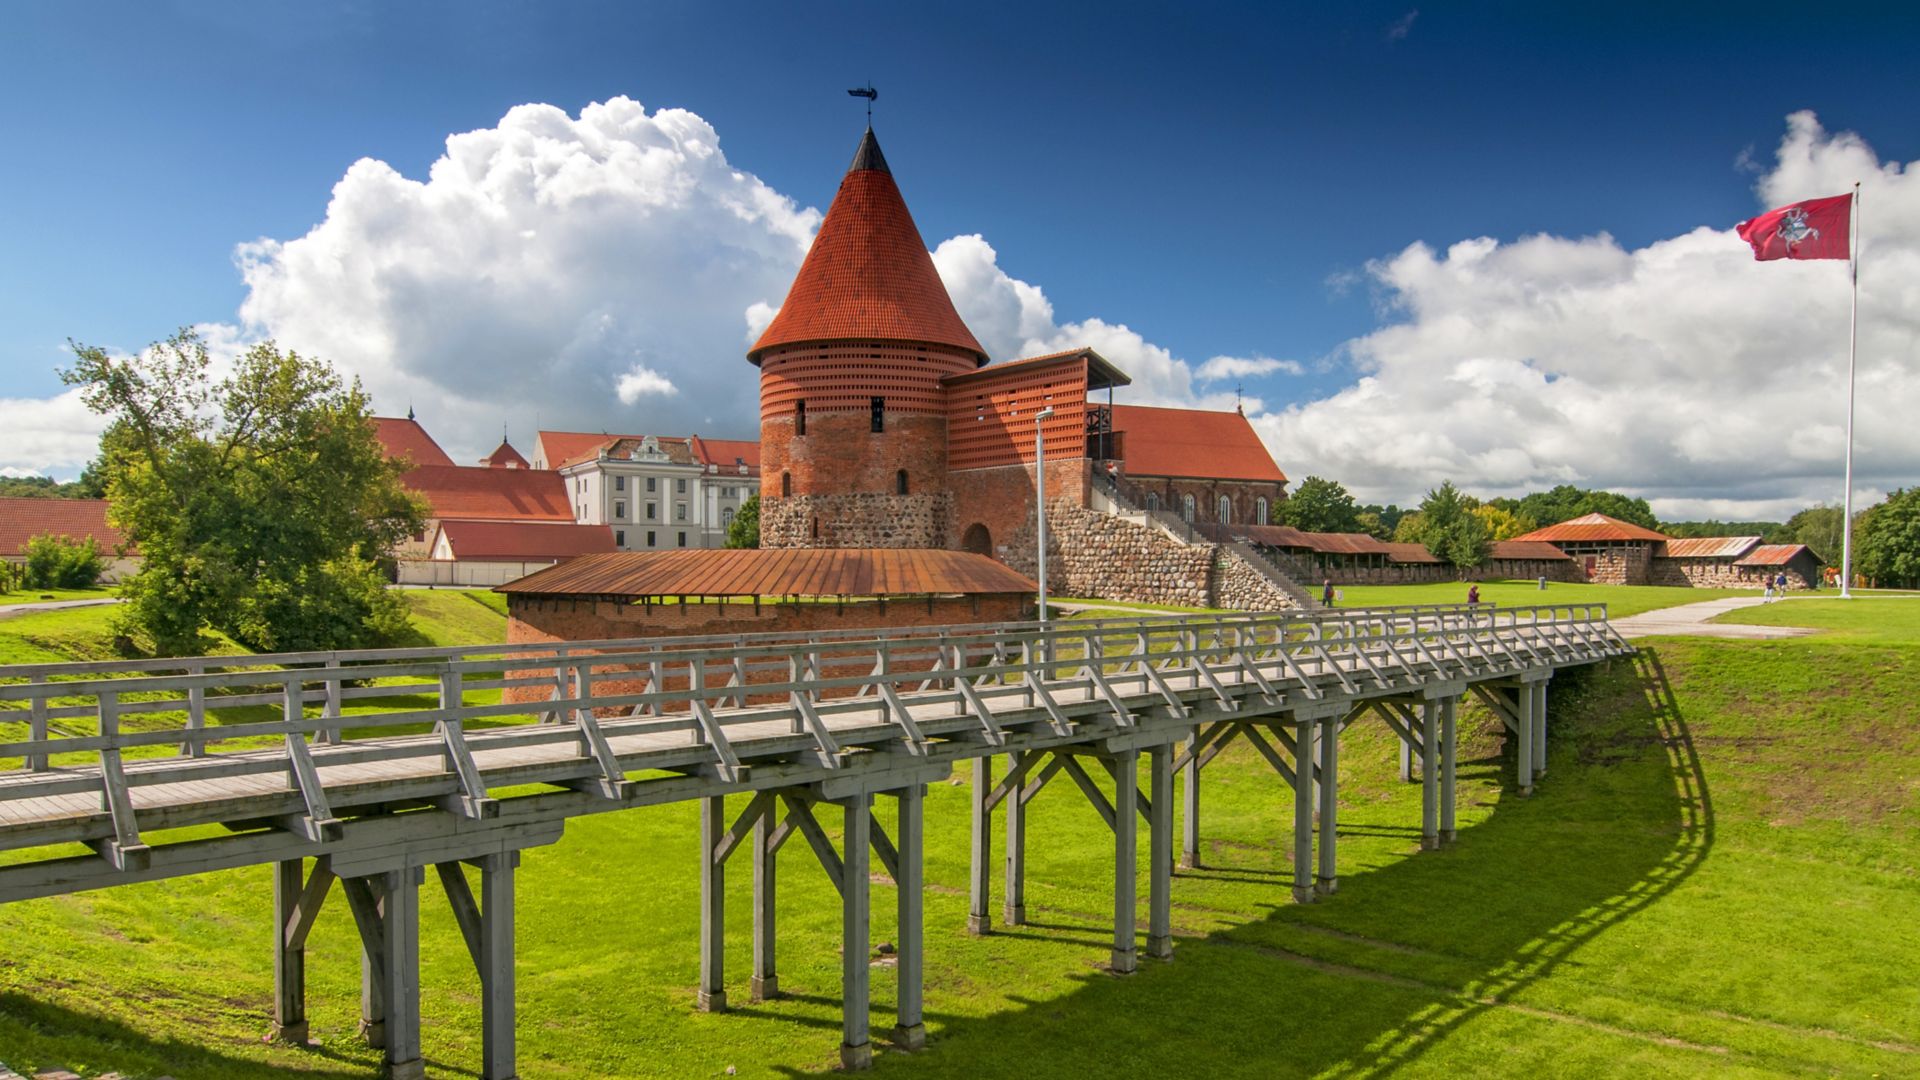 Kauņas pils, celta 14. gadsimta vidū, gotiskajā stilā, Kauņa, Lietuva.